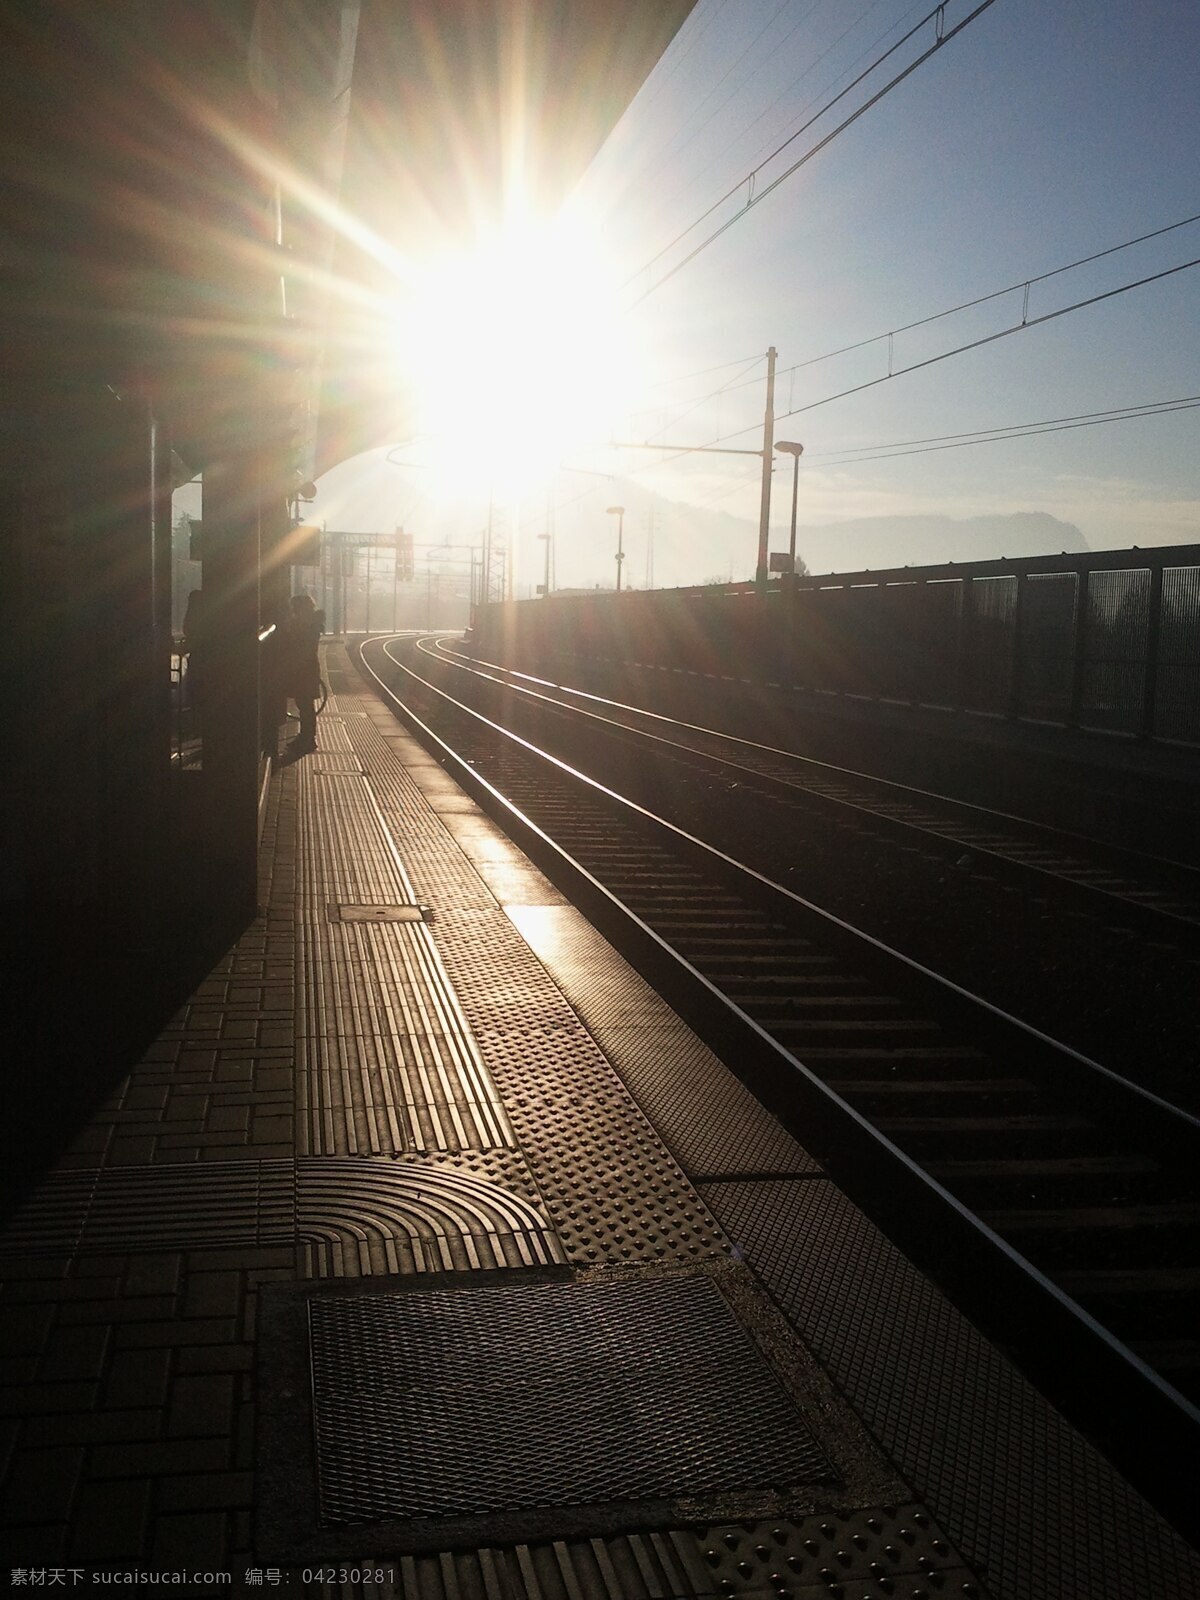 清晨 里 车站 月台 铁轨 阳光 多娇江山 自然景观 自然风景